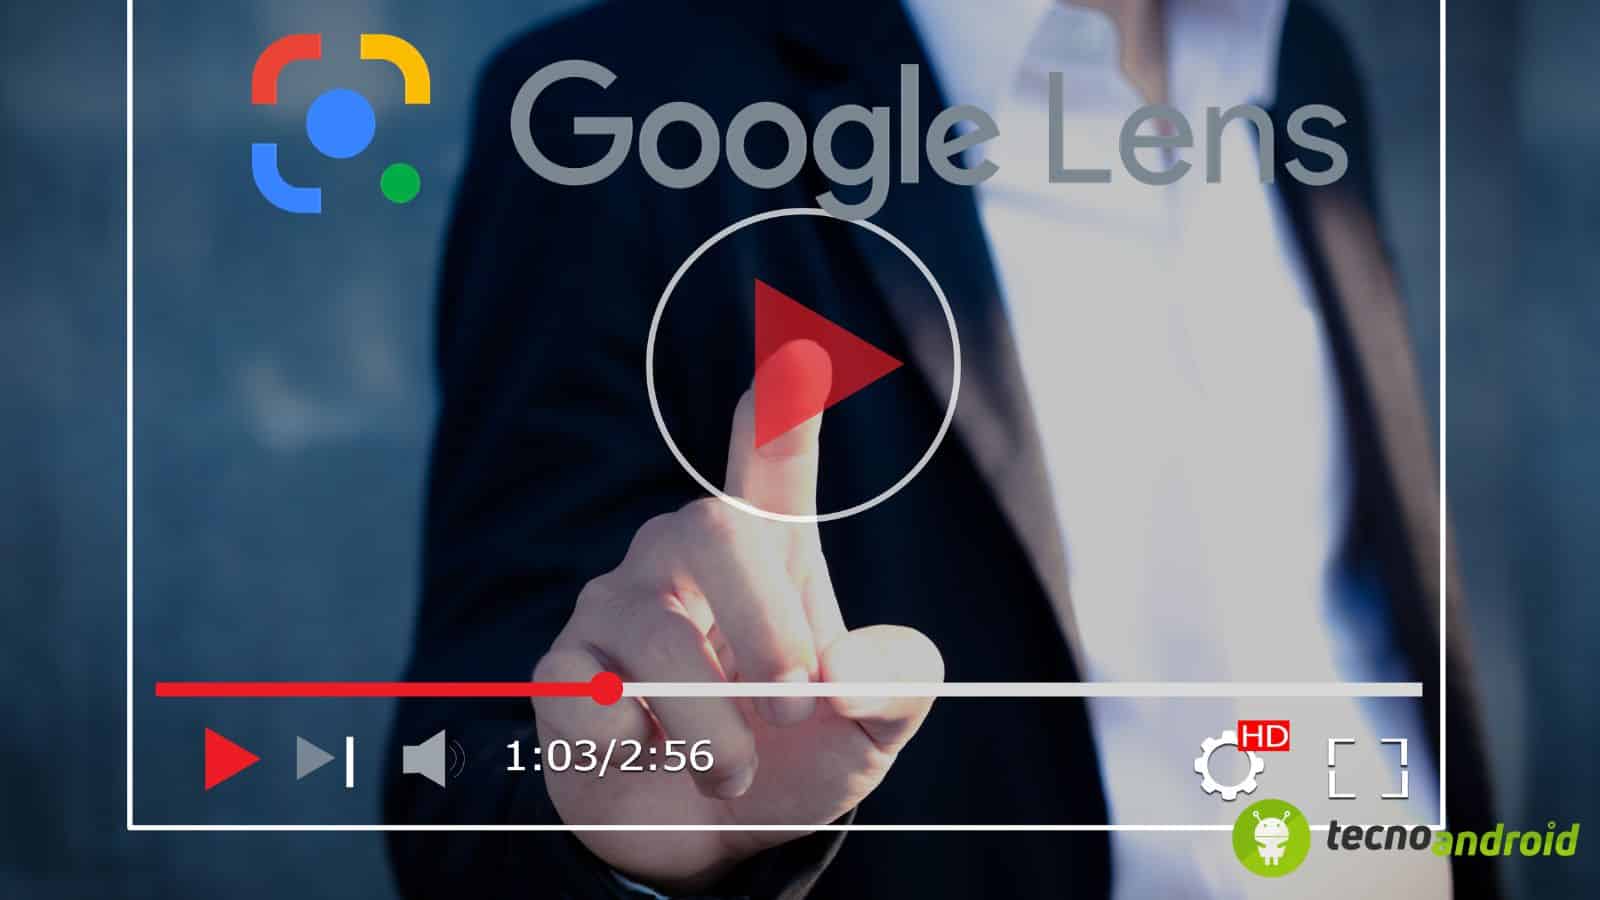 Google Lens: in arrivo una funzione di ricerca 